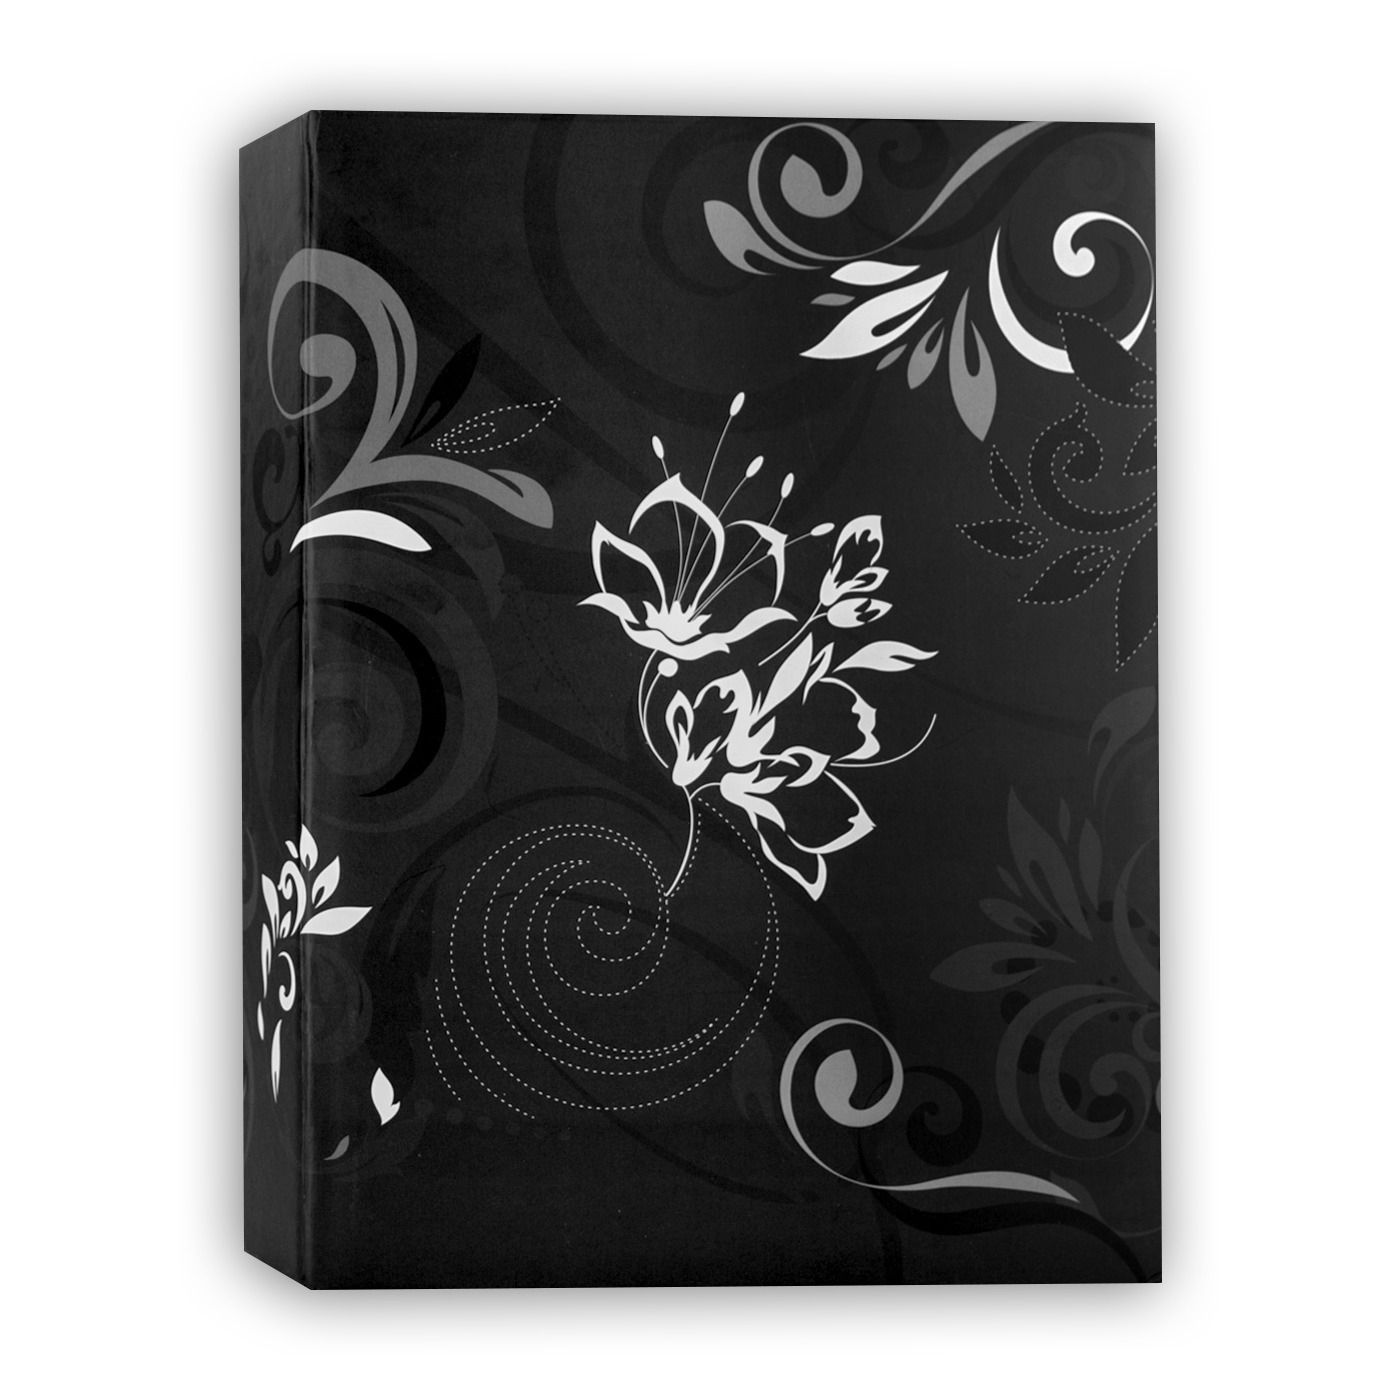 Fotoboek-fotoalbum Umbria met insteekhoesjes zwart bloemenprint voor 200 fotos 19 x 25 x 5 cm